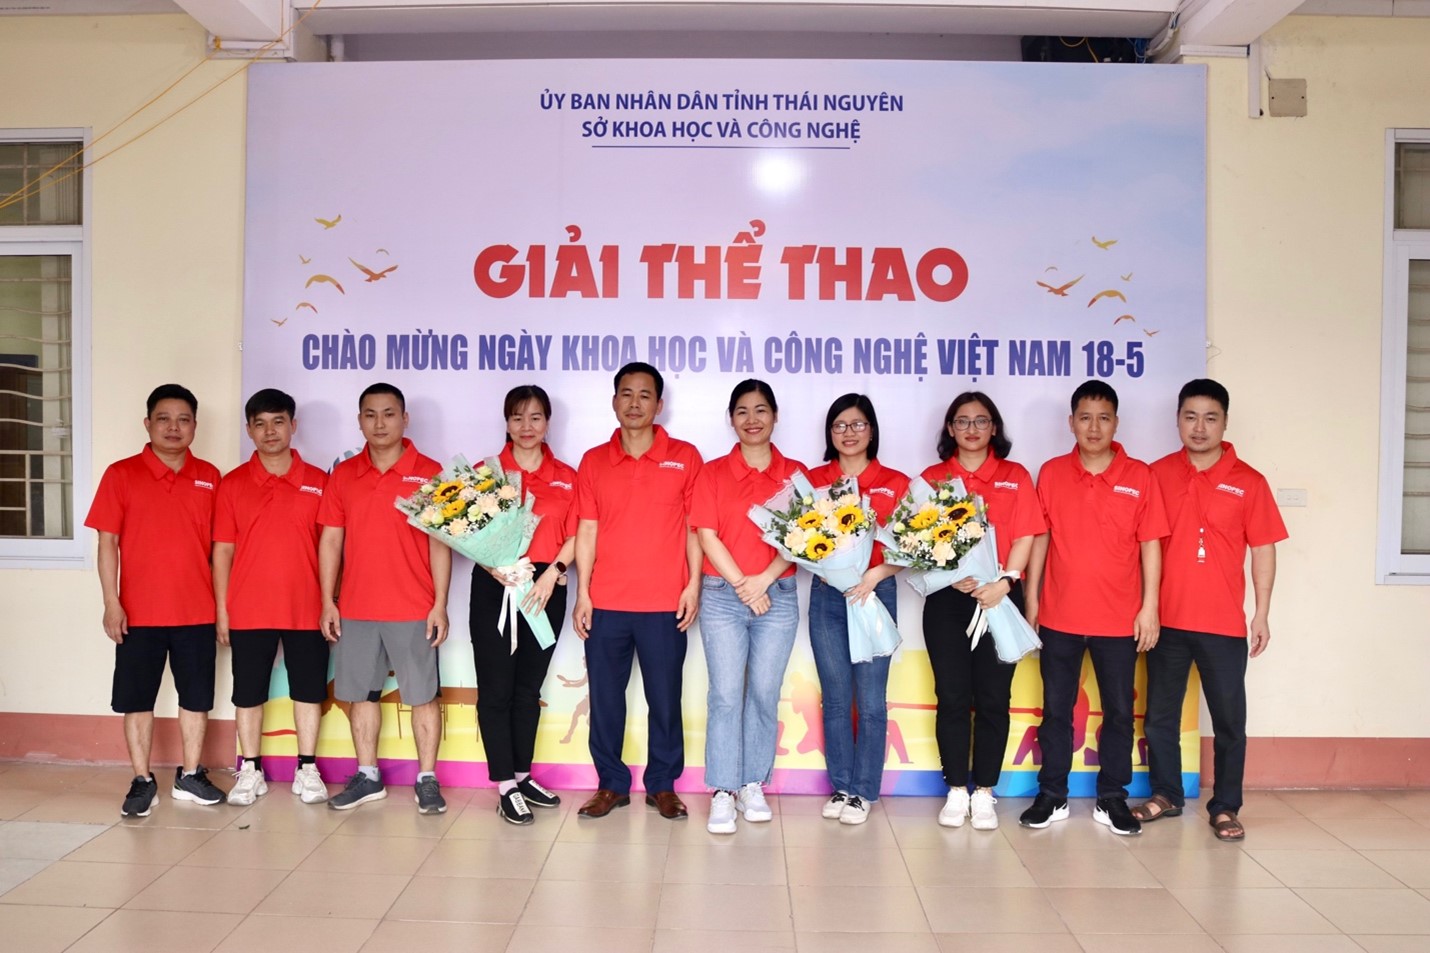 Giải thể thao chào mừng Ngày Khoa học và Công nghệ Việt Nam 18-5 -2